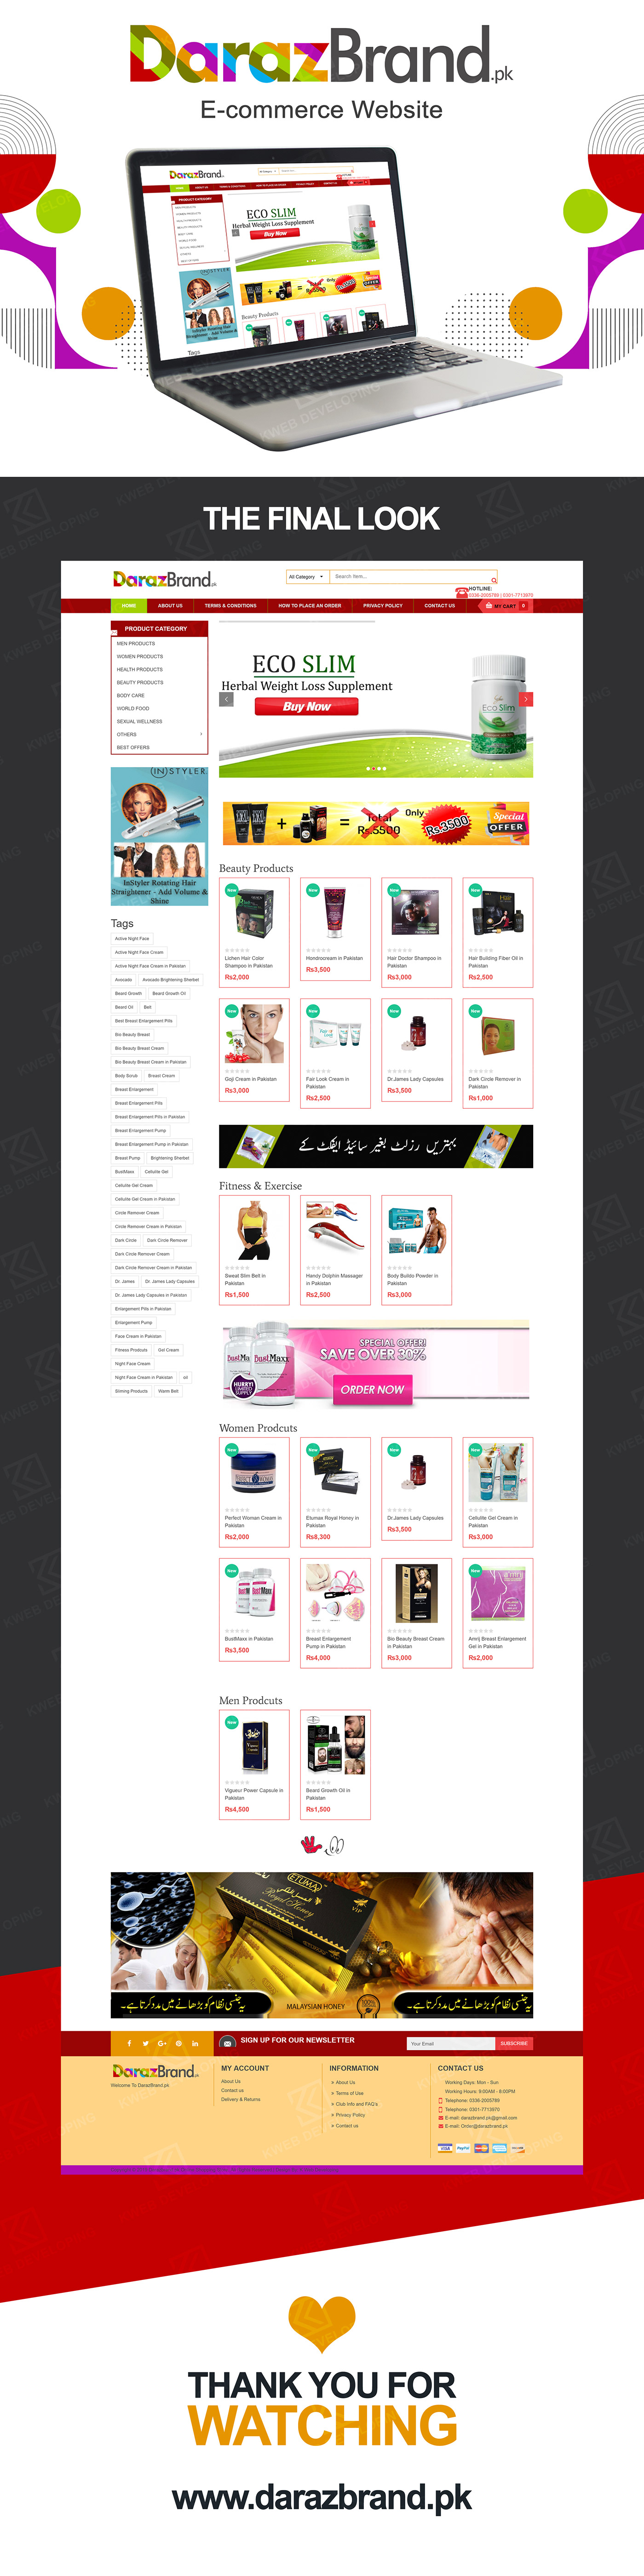 products webiste modern wensite Website Design SEO Domain hosting